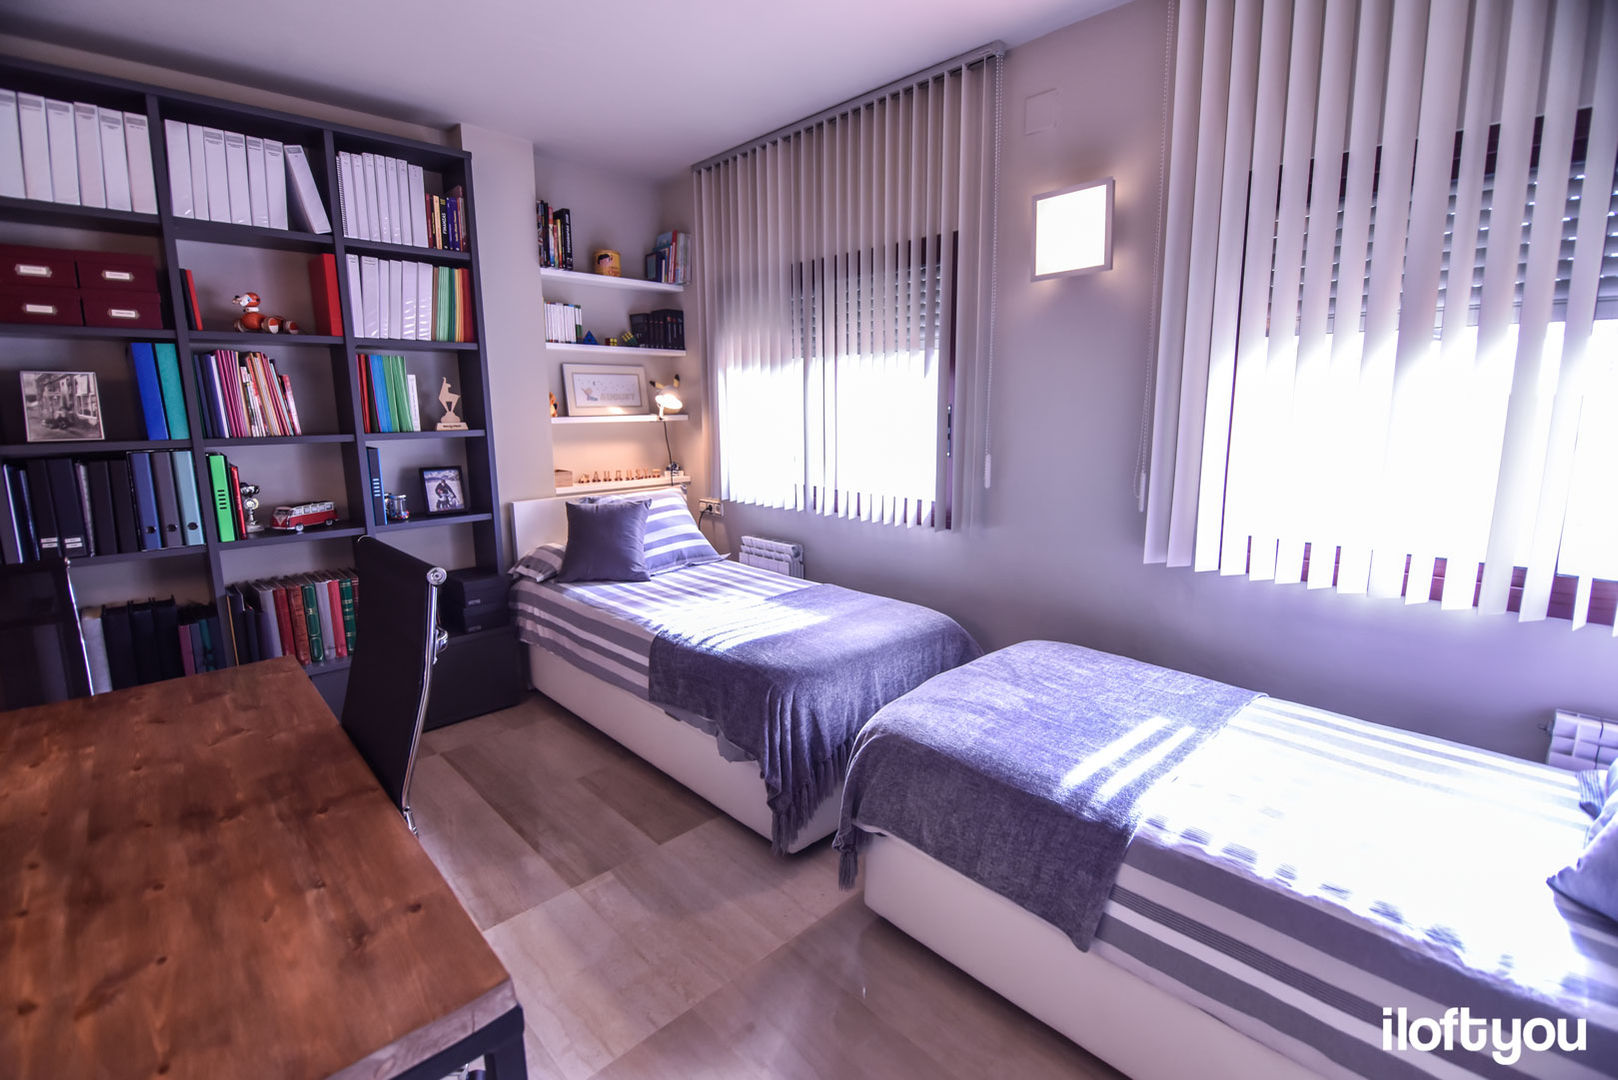 Dormitorio juvenil en Badalona iloftyou Dormitorios de estilo moderno